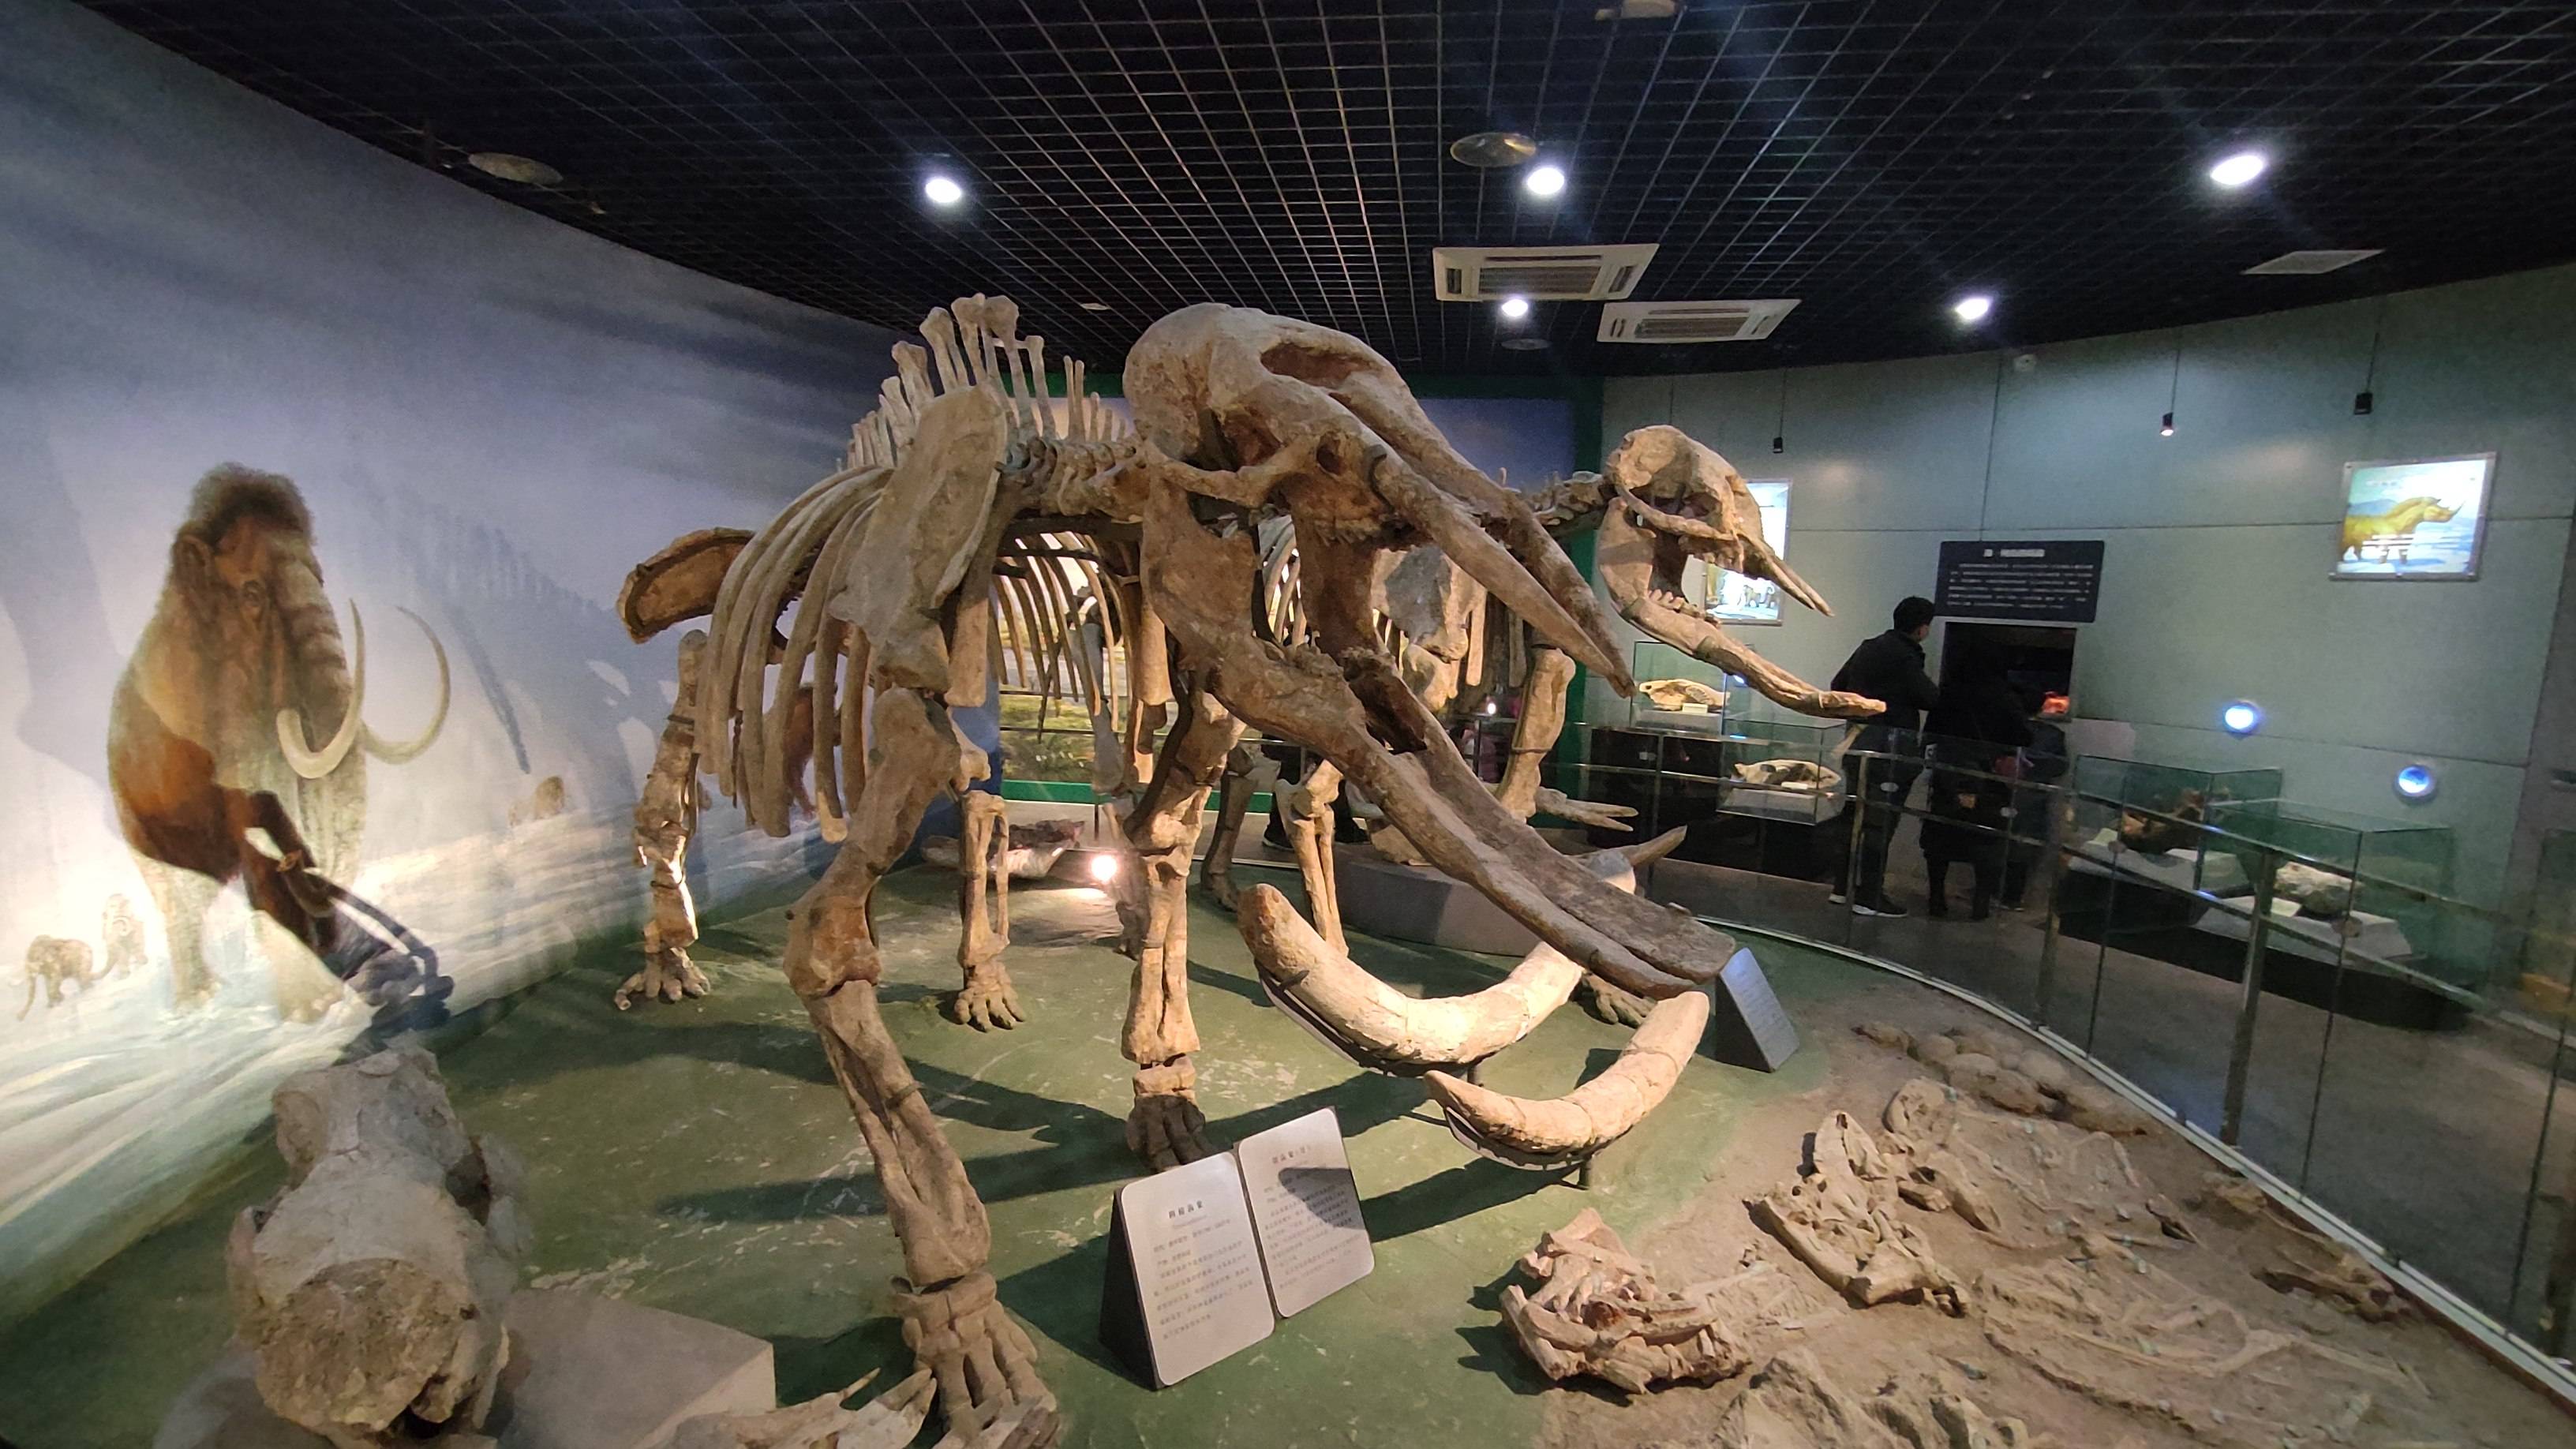 河南省地质博物馆(现河南自然博物馆)位于郑州市郑东新区金水东路18